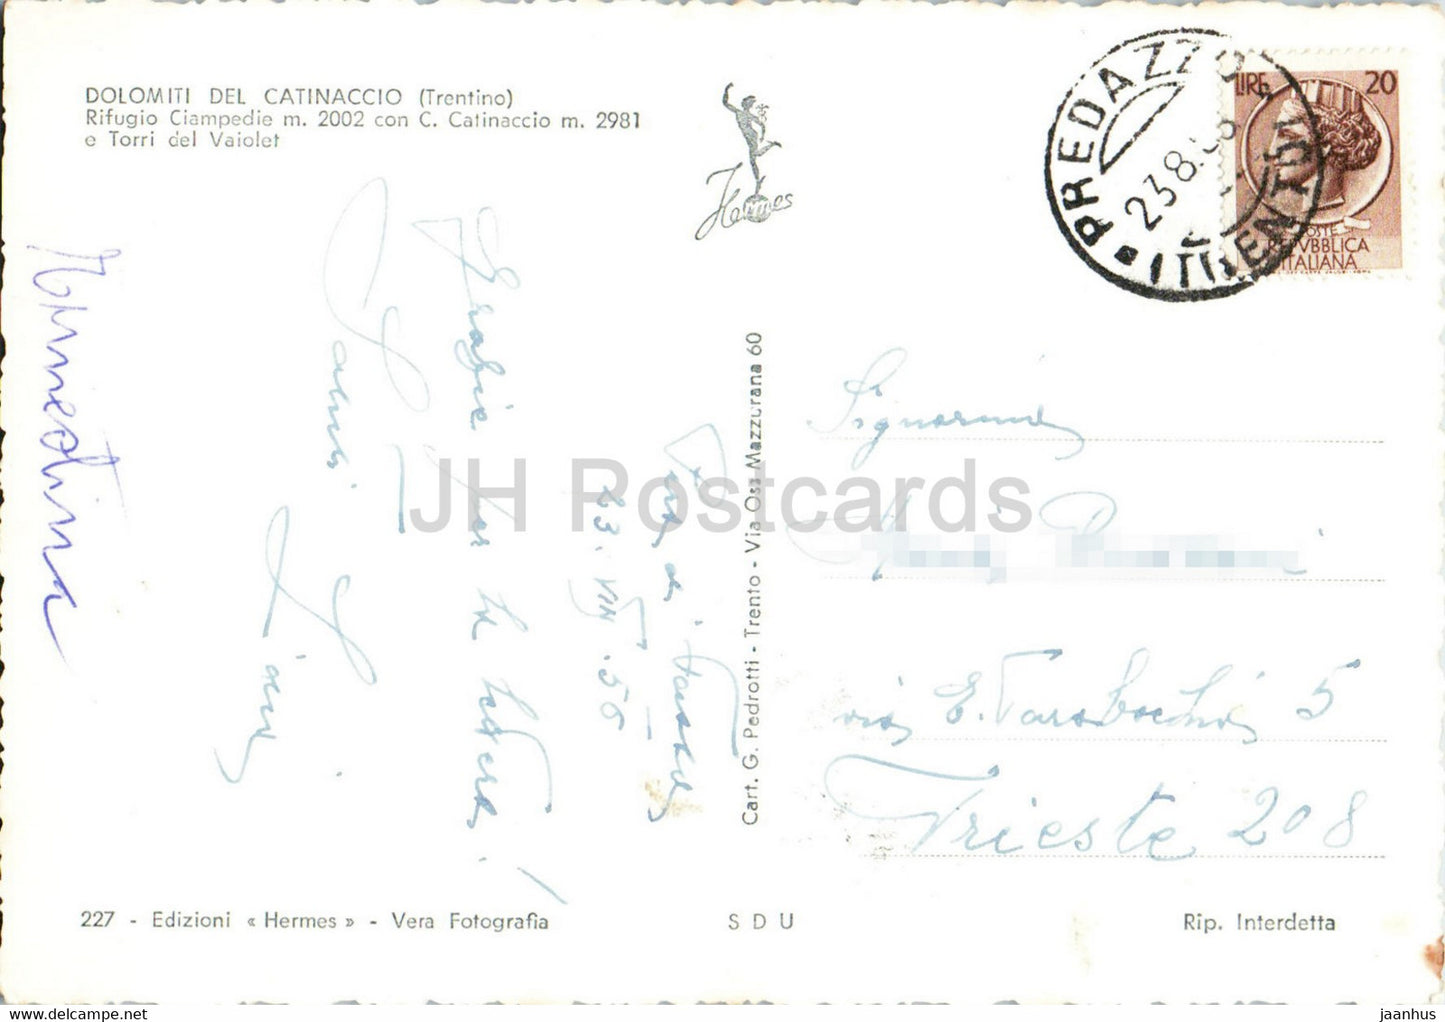 Dolomiti del Catinaccio - Rifugio Ciampedie - Torri del Vaiolet - old postcard - 1956 - Italy - used